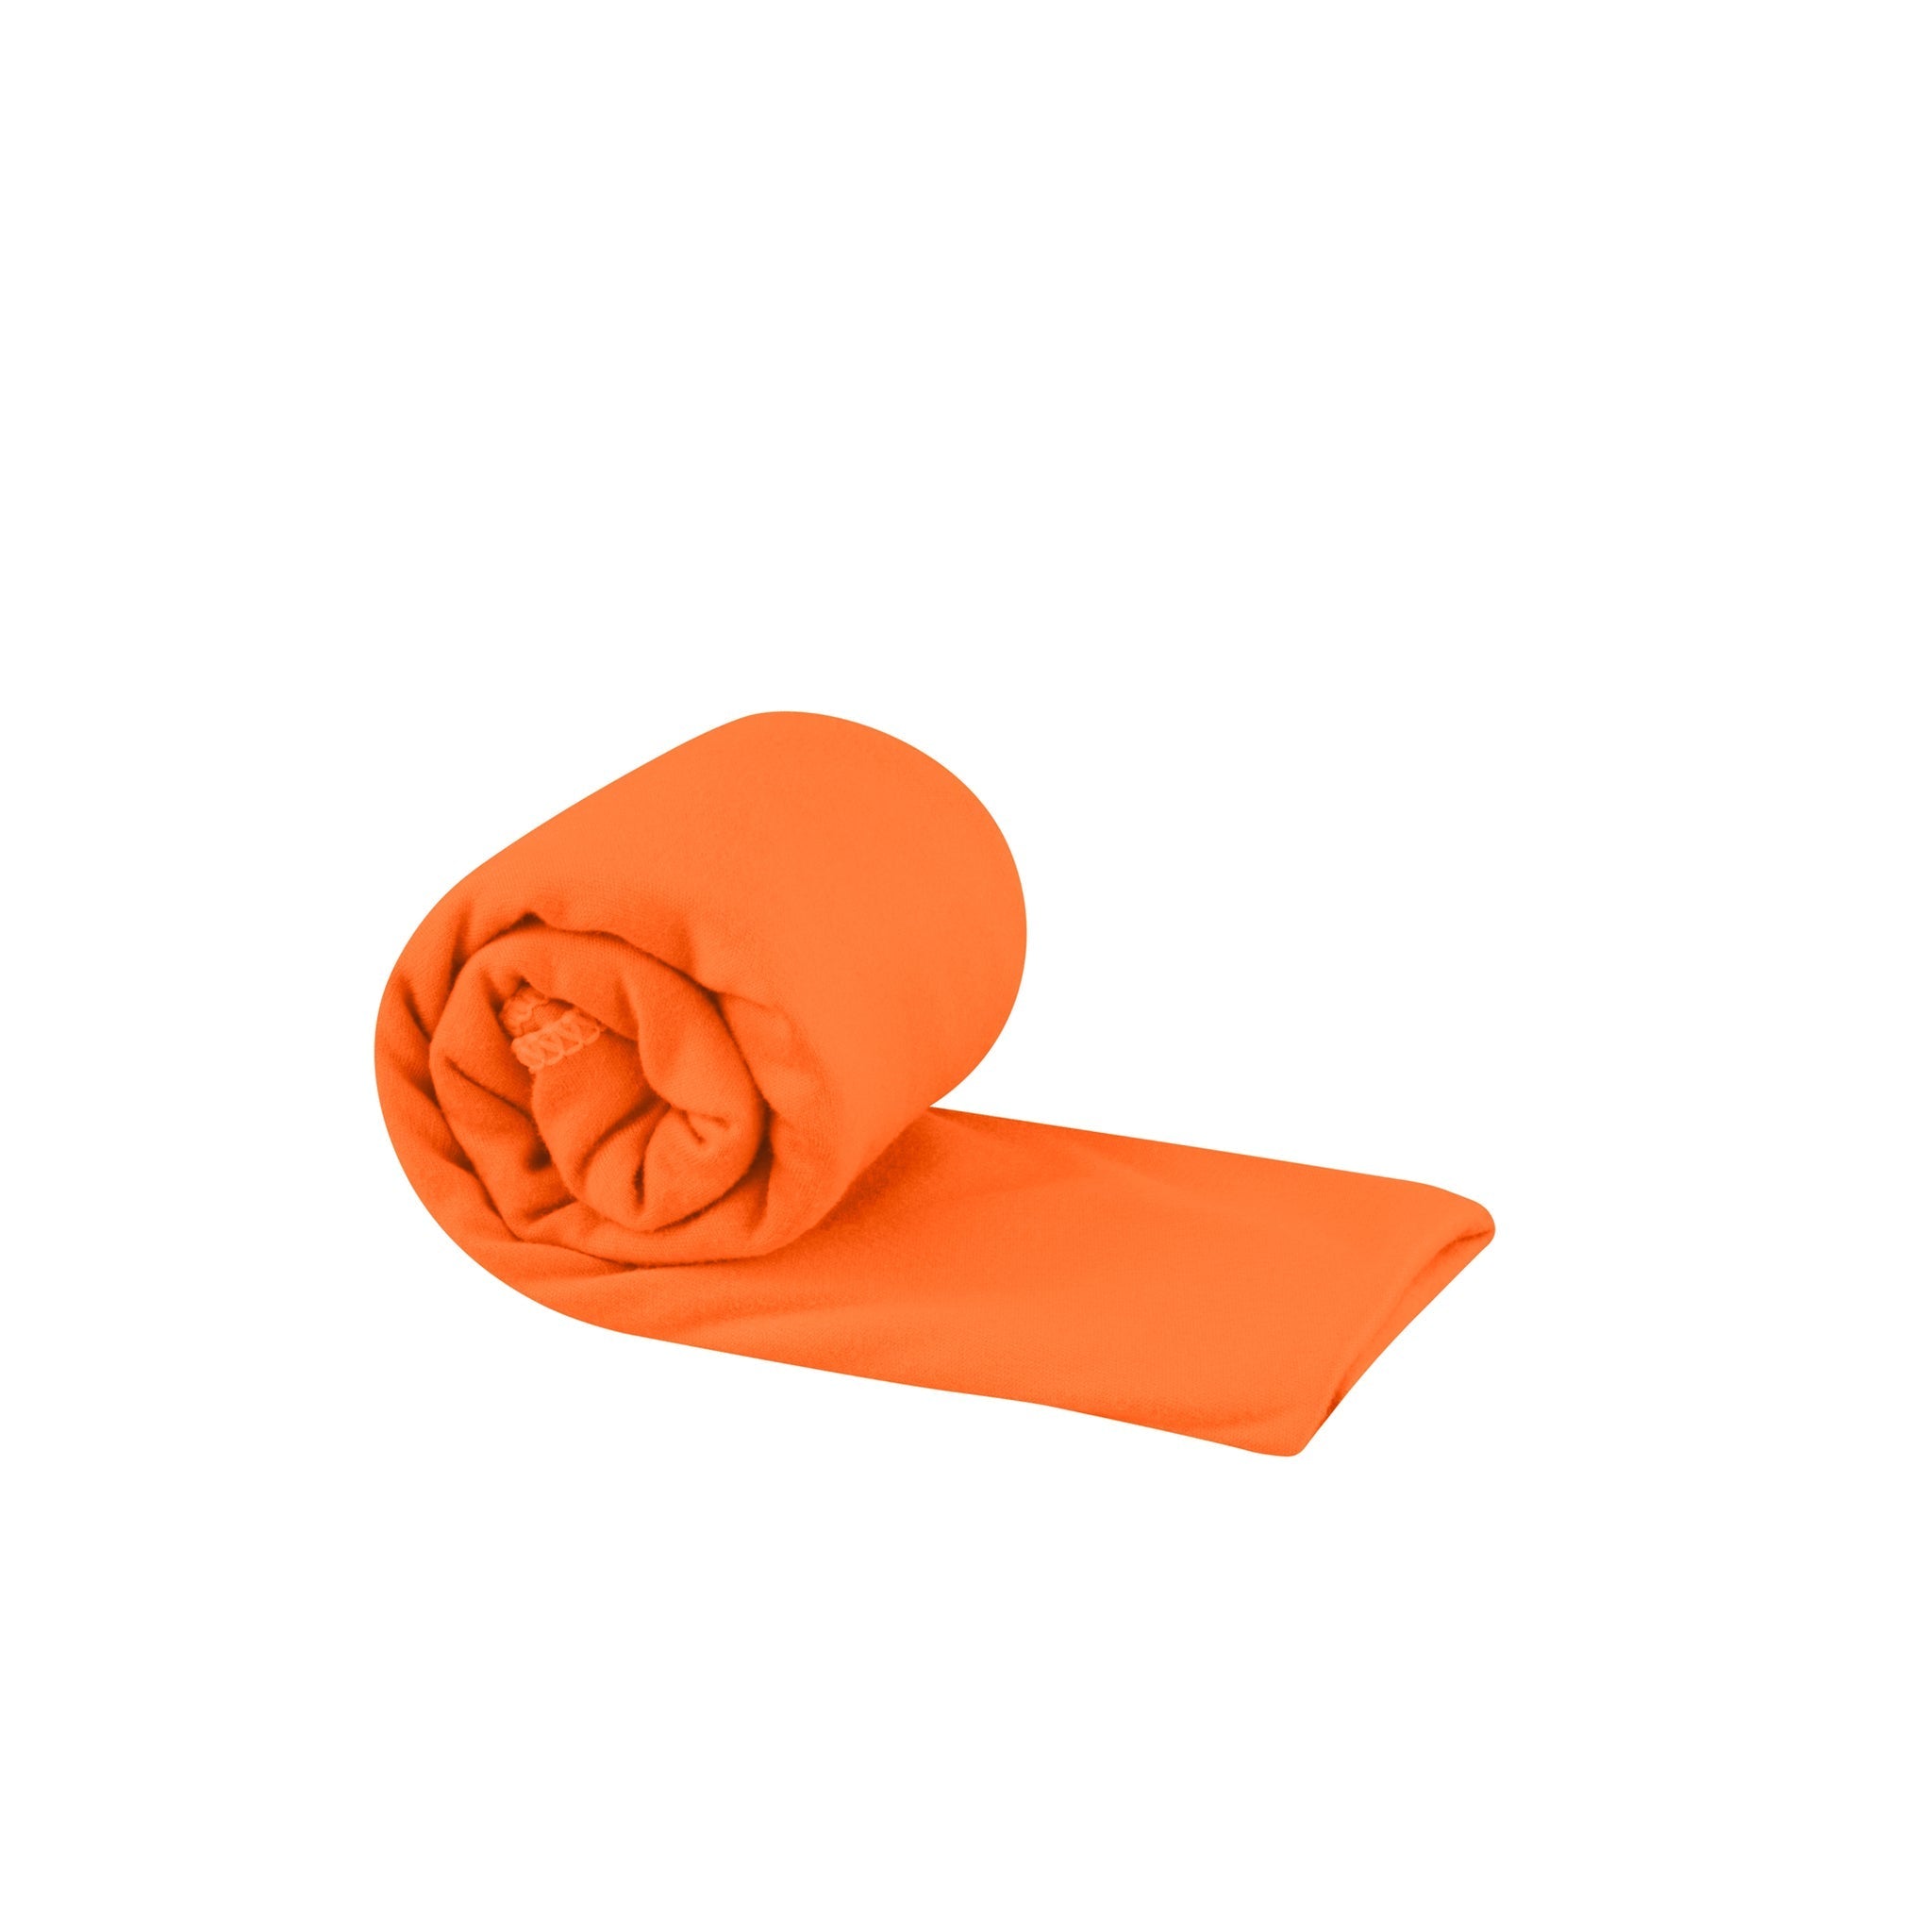 Suede Super Soft Microfiber Cloth 16 x 16 inch - Orange – Ceramic